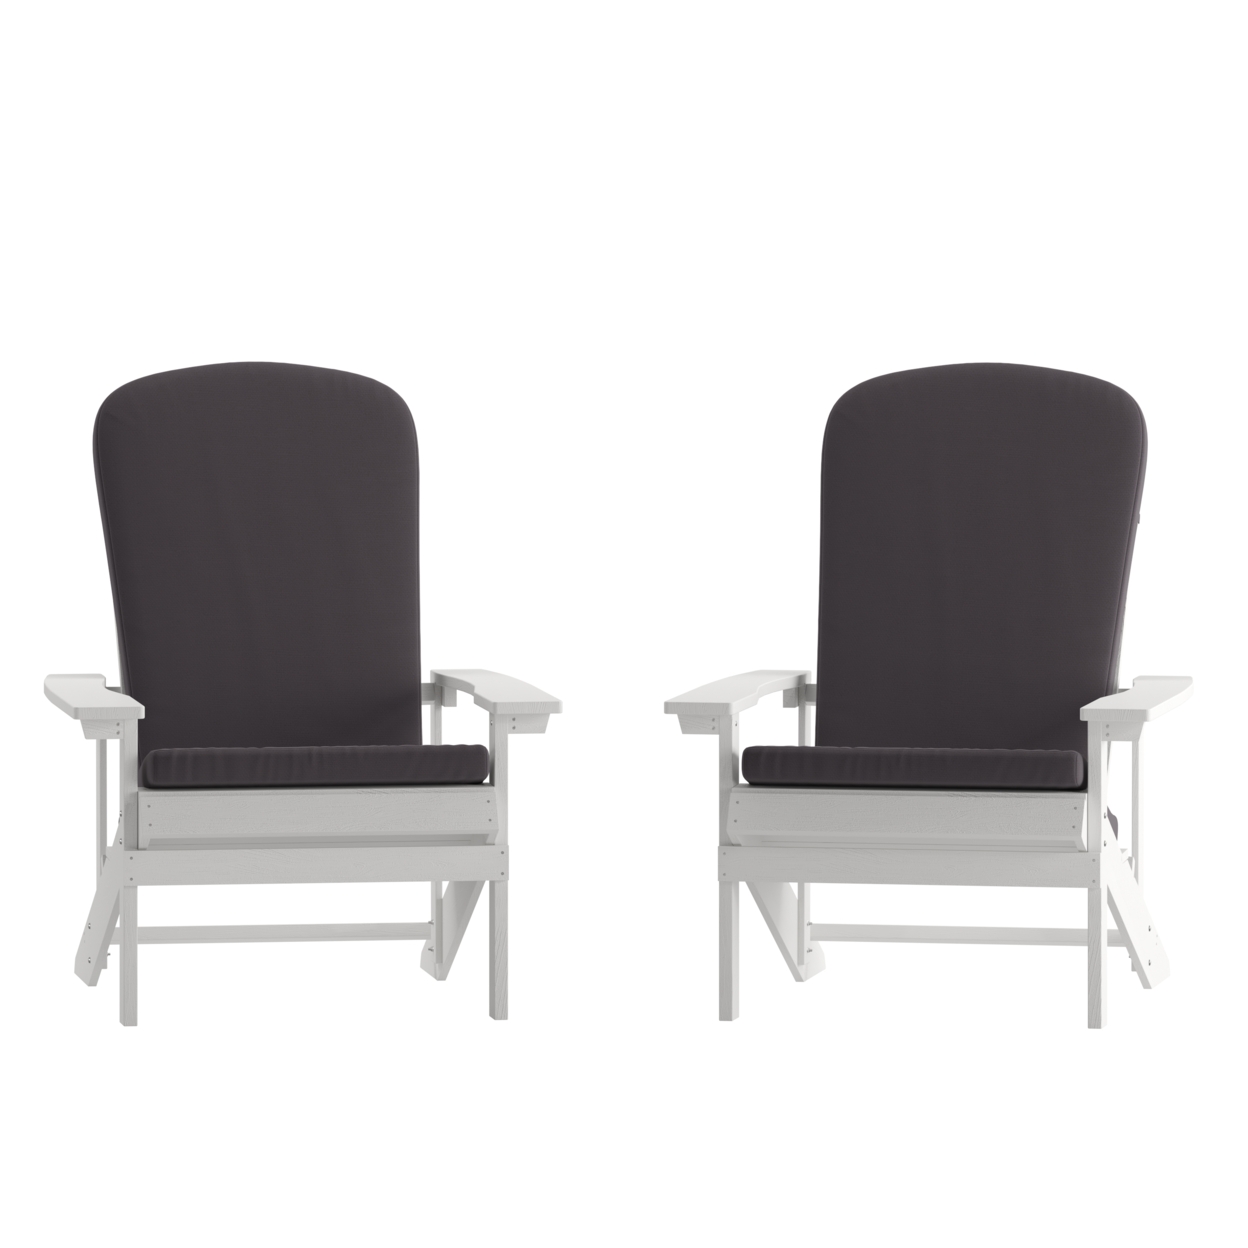 2PK WH Chairs-Cream Cushions